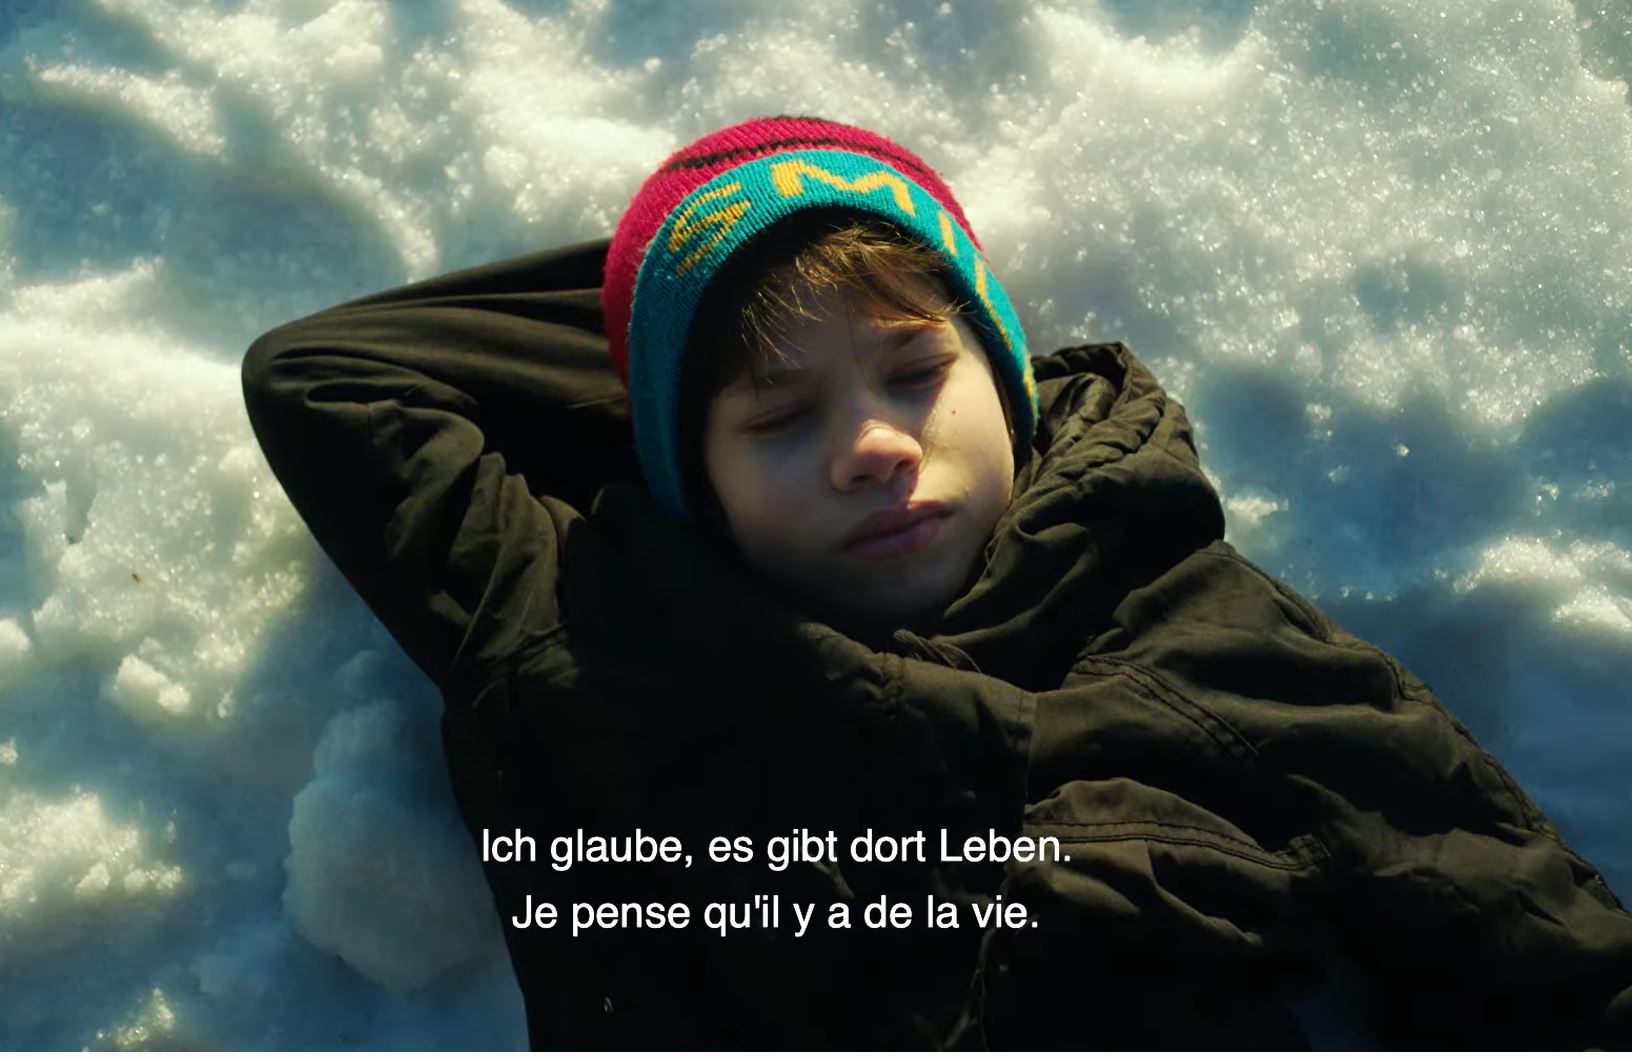 “Zgjimi në Mars” i Dea Gjinovcit nominohet për “Filmin Zviceran të Vitit”